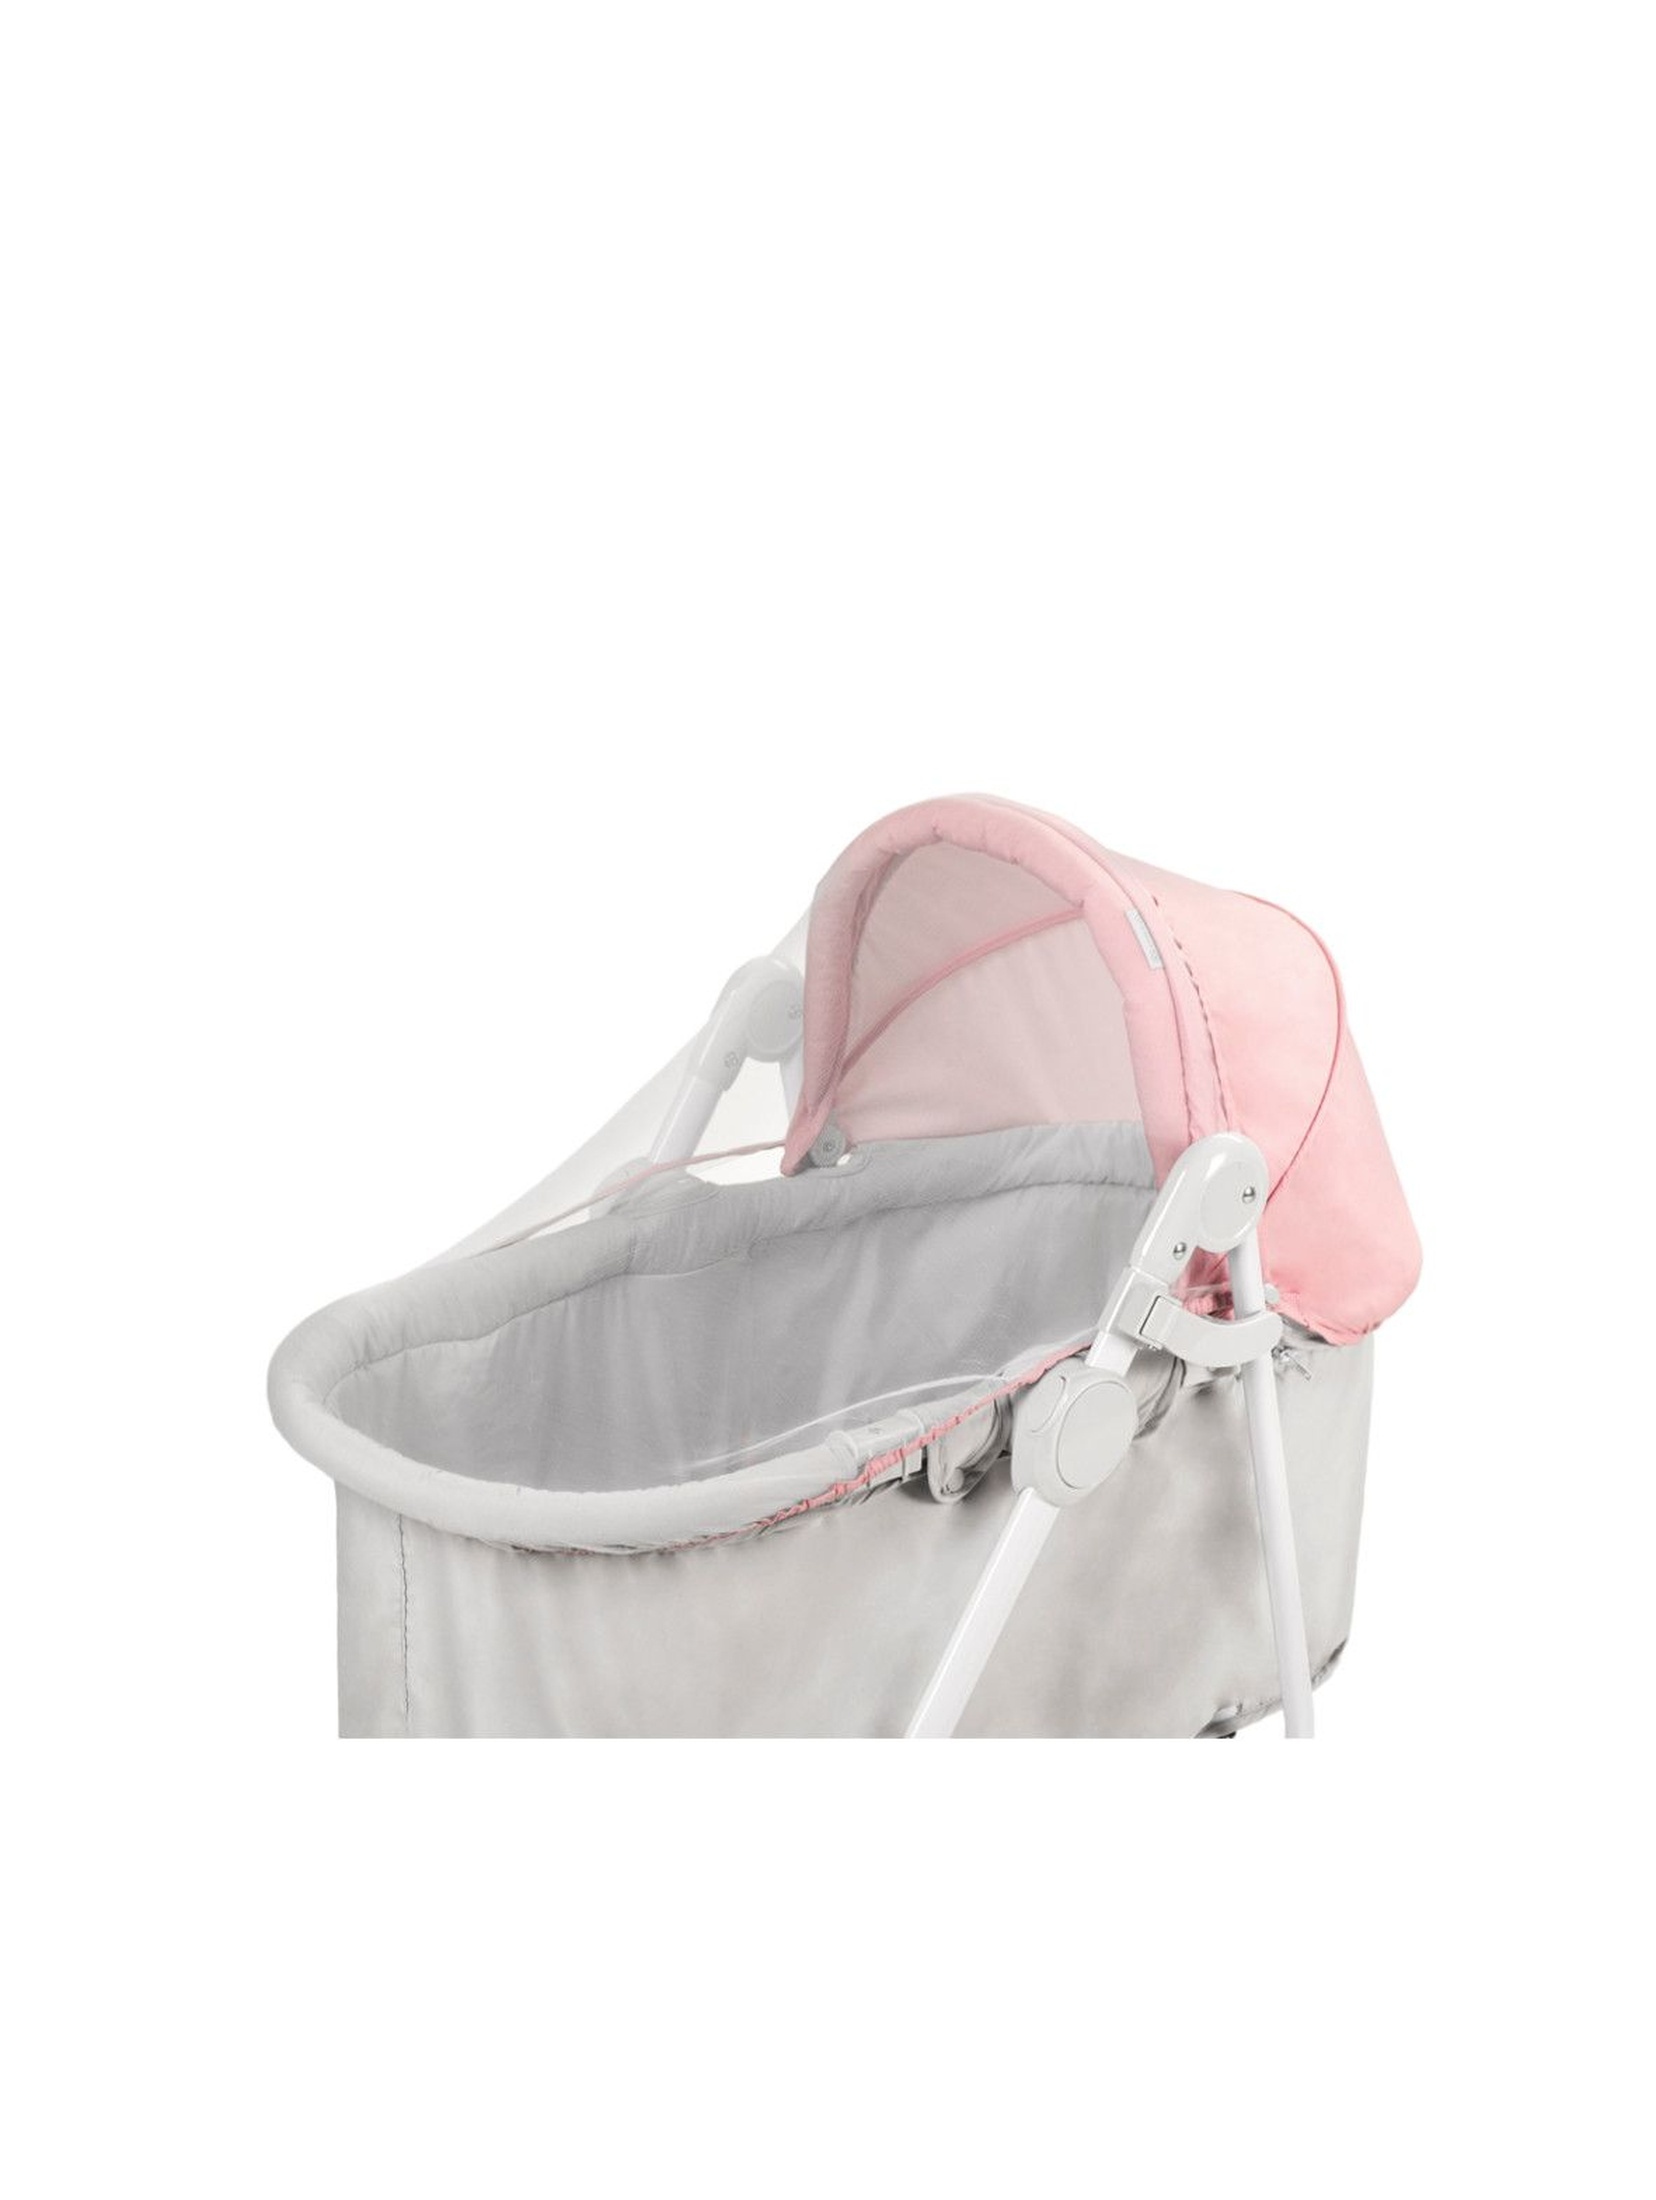 Bujaczek niemowlęcy UNIMO różowy